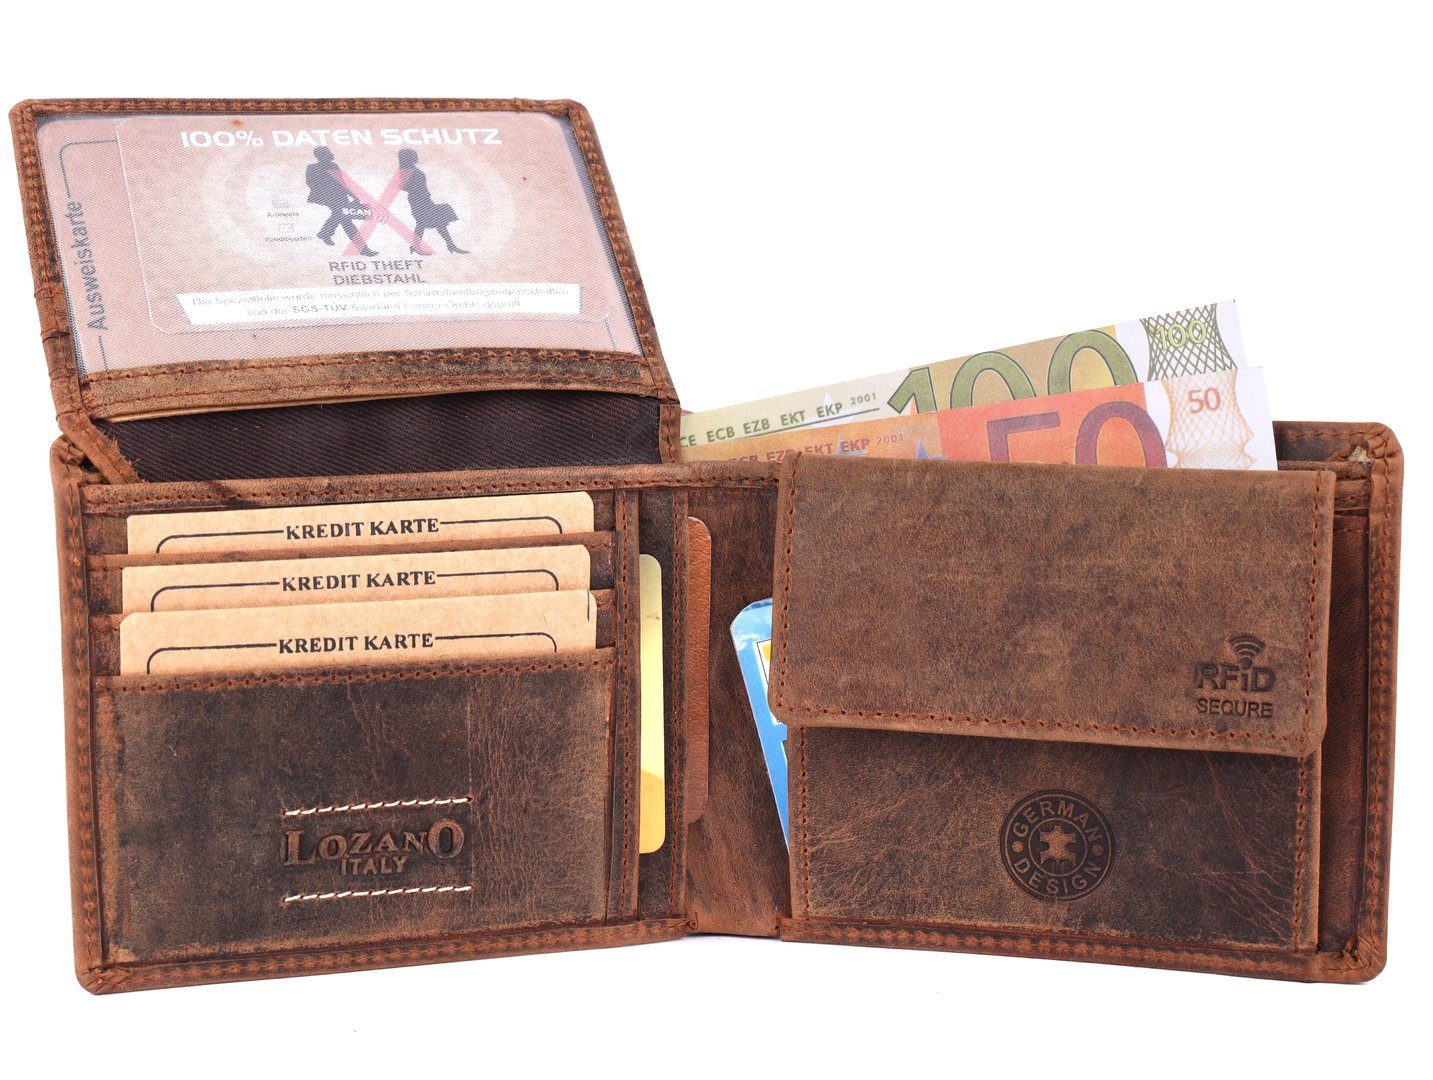 SHG mit Schutz Münzfach Leder Lederbörse Portemonnaie, Börse Männerbörse Herren Brieftasche Geldbörse RFID Büffelleder